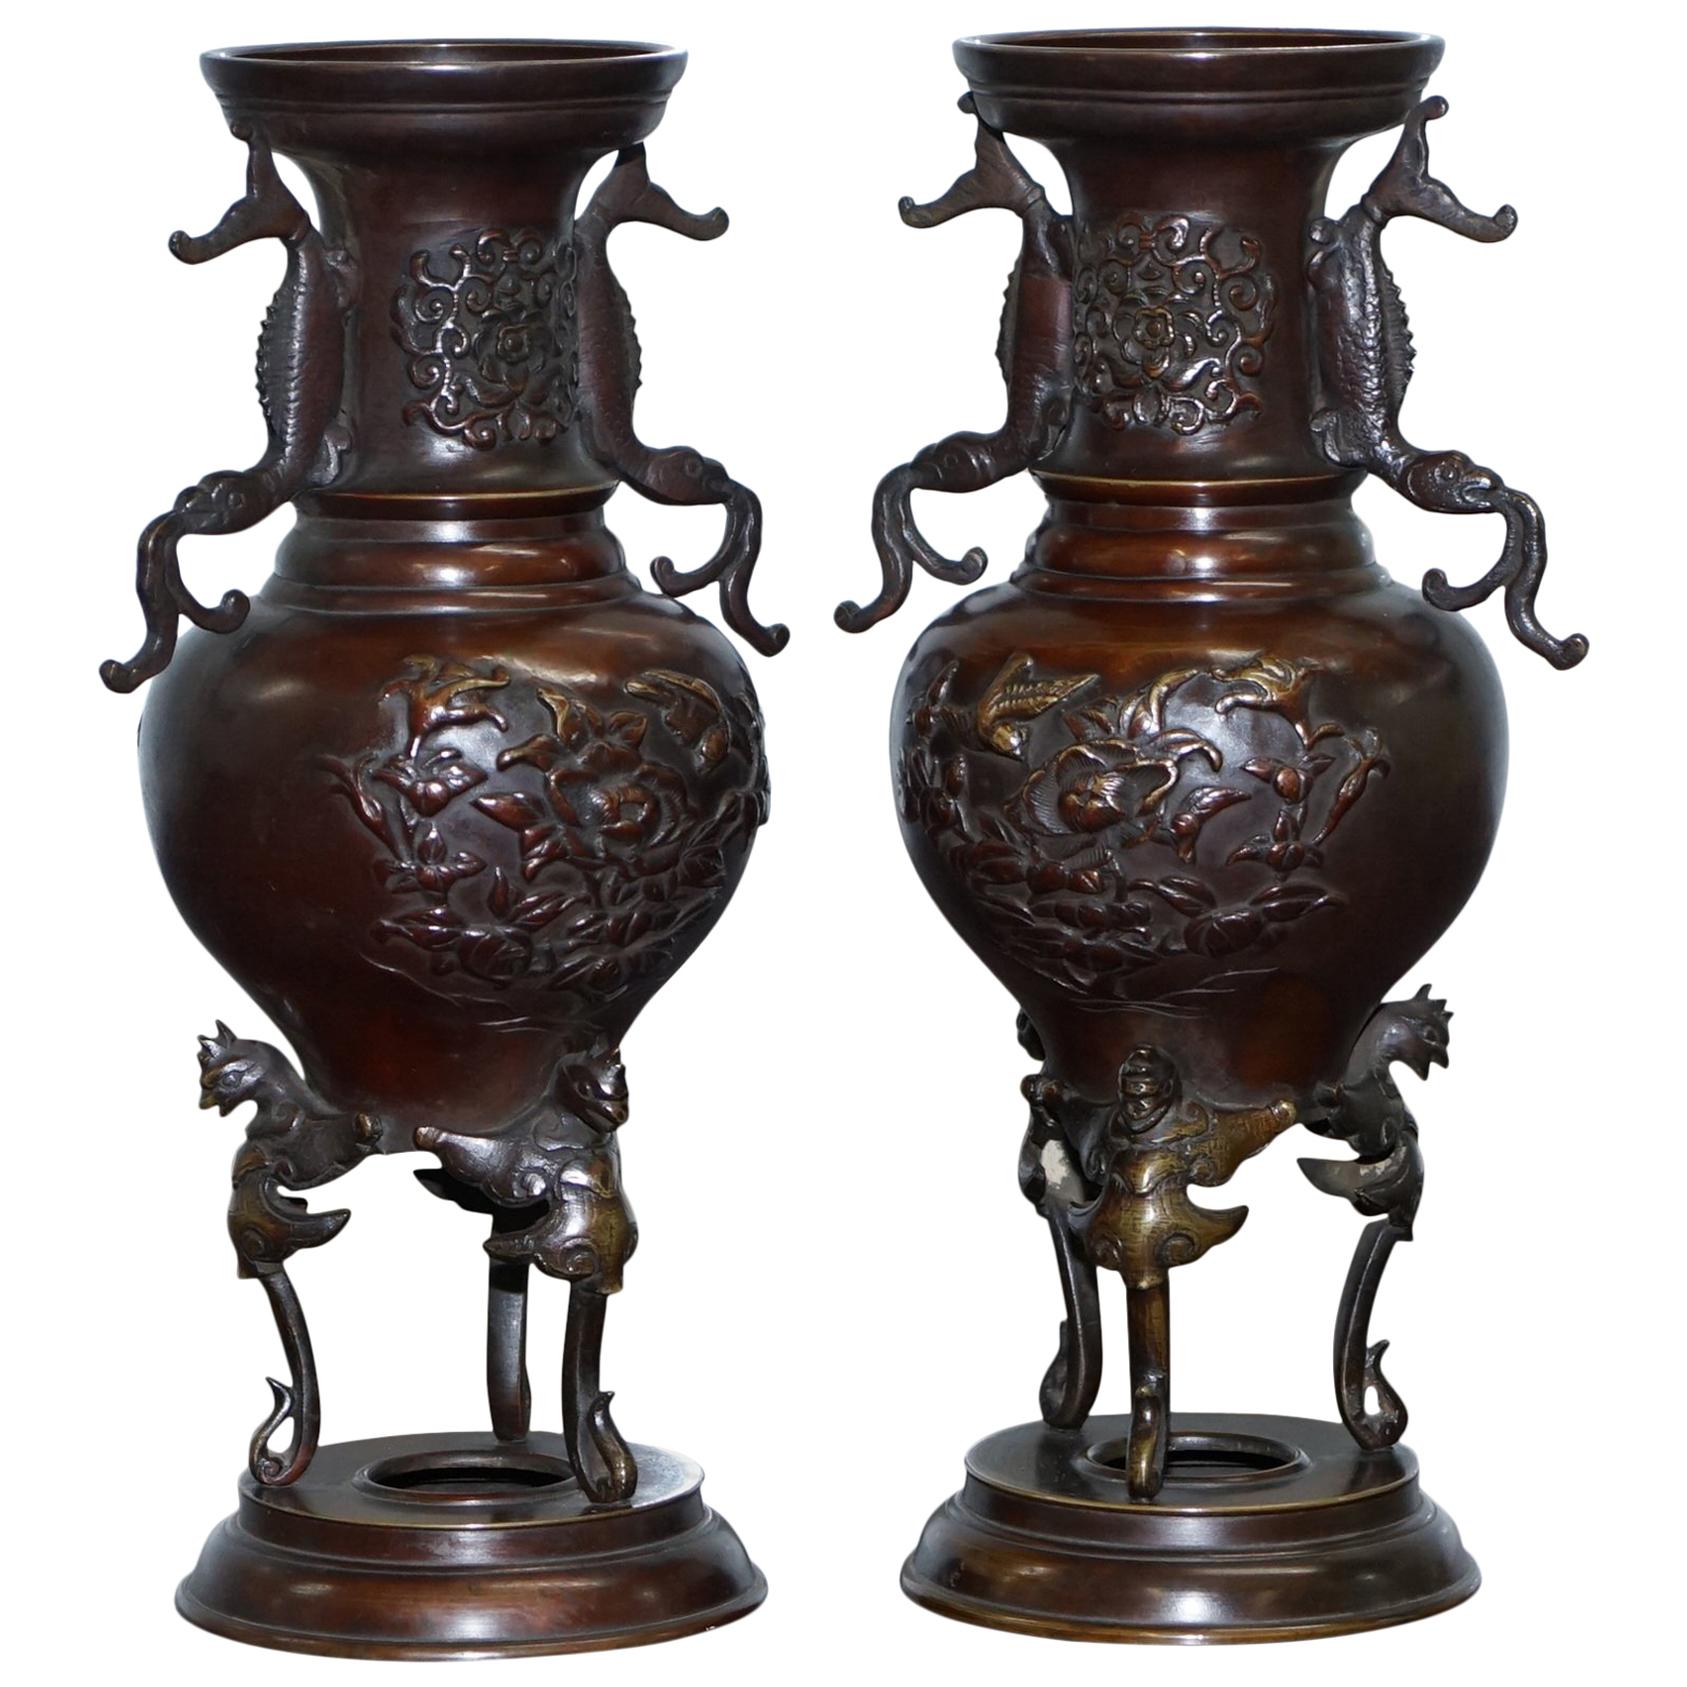 Paire d'urnes orientales en bronze décorées d'oiseaux serpentins, chinoises et japonaises